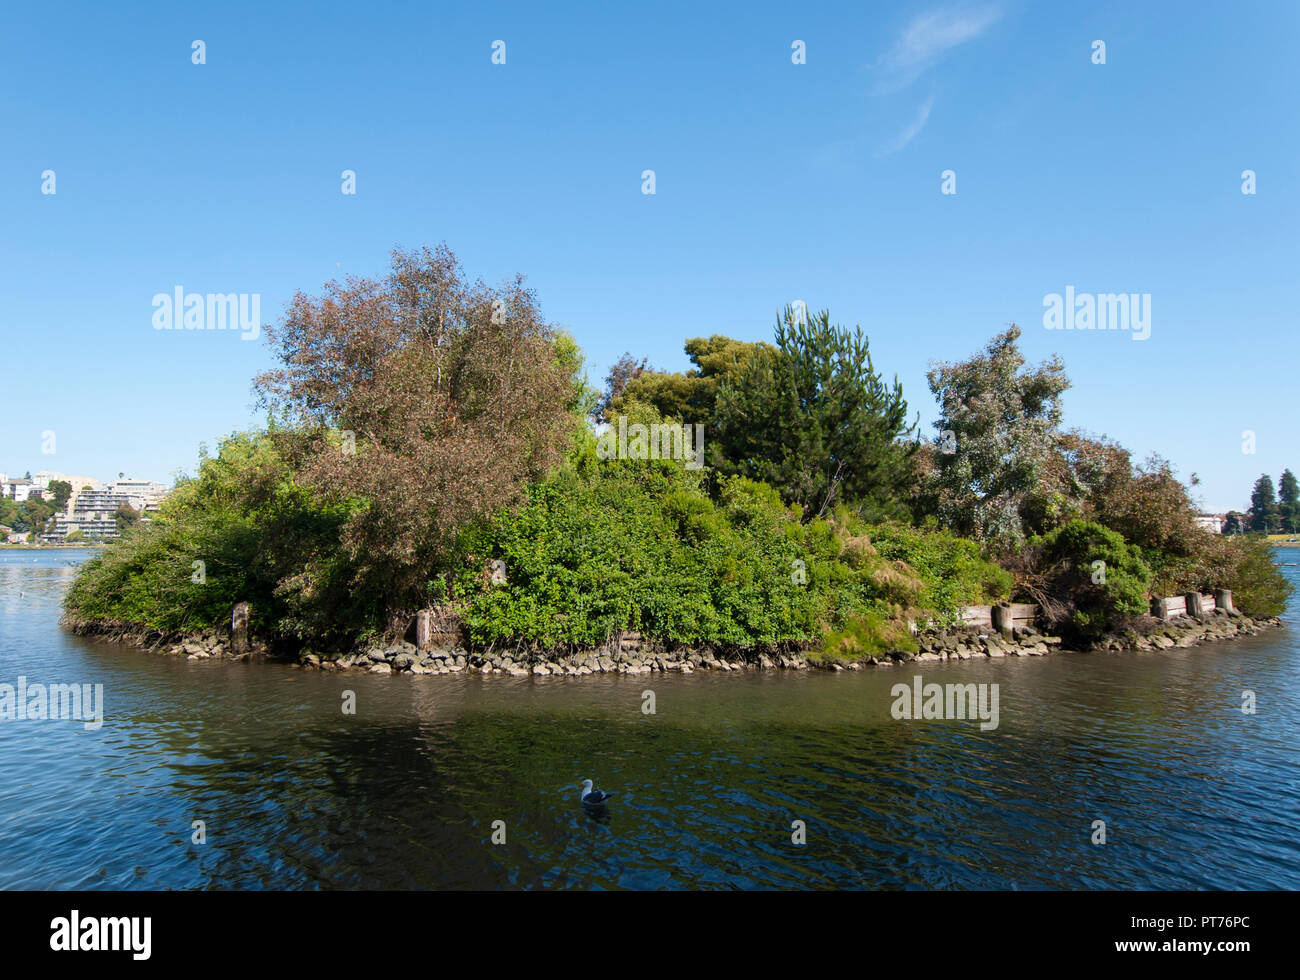 Eine von fünf künstlichen Inseln für Vögel am Lake Merritt Wildlife Refuge in Oakland, das älteste Wildlife Refuge in Nordamerika. Stockfoto